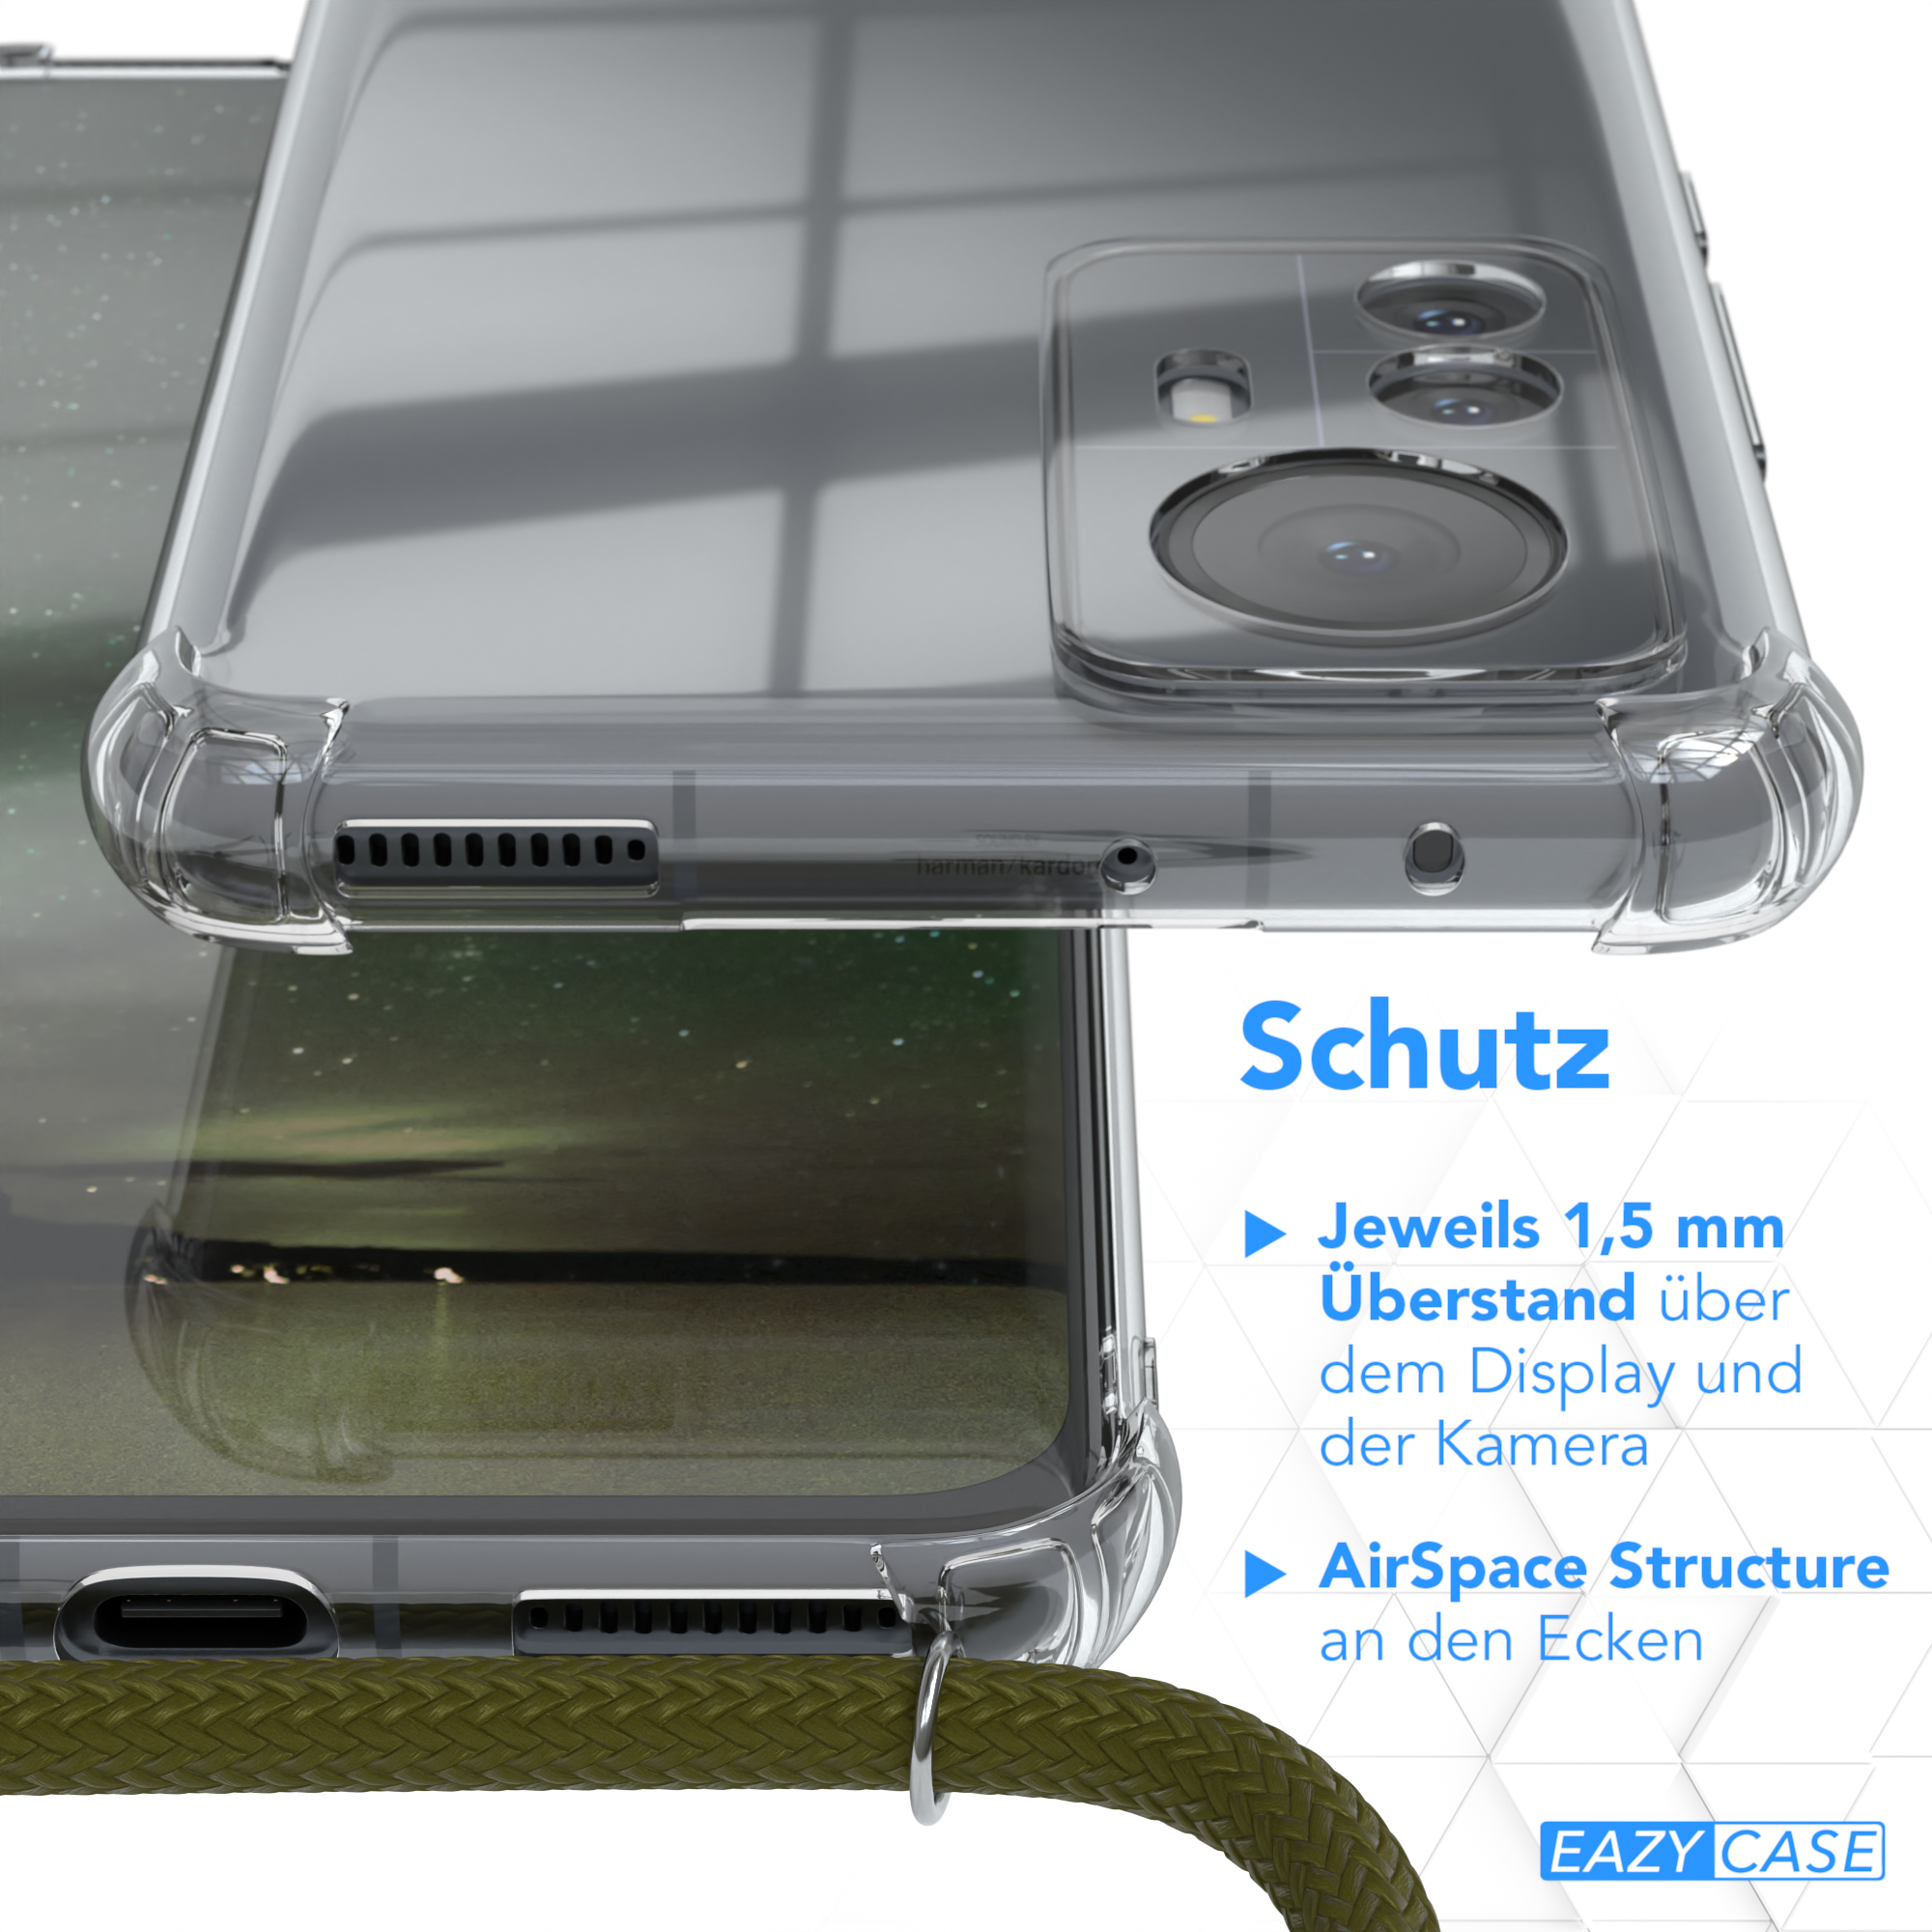 EAZY CASE Clear Cover mit Pro, Umhängeband, Umhängetasche, Xiaomi, Grün 12 Olive